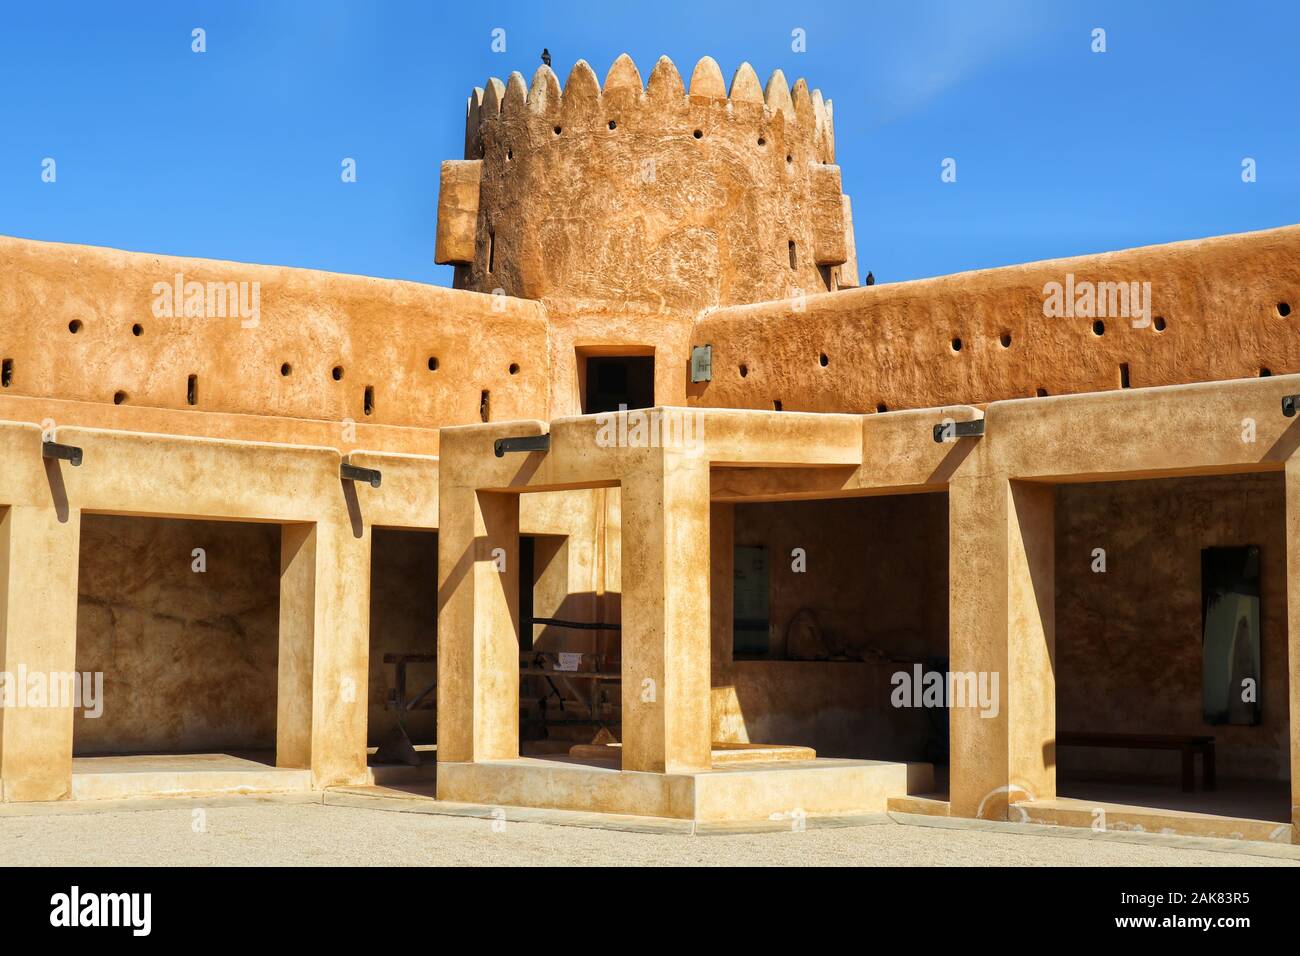 Il Forte al Zubara è una storica fortezza militare Qatar costruita nel 1928. E' una delle principali attrazioni turistiche del Qatar. Foto Stock